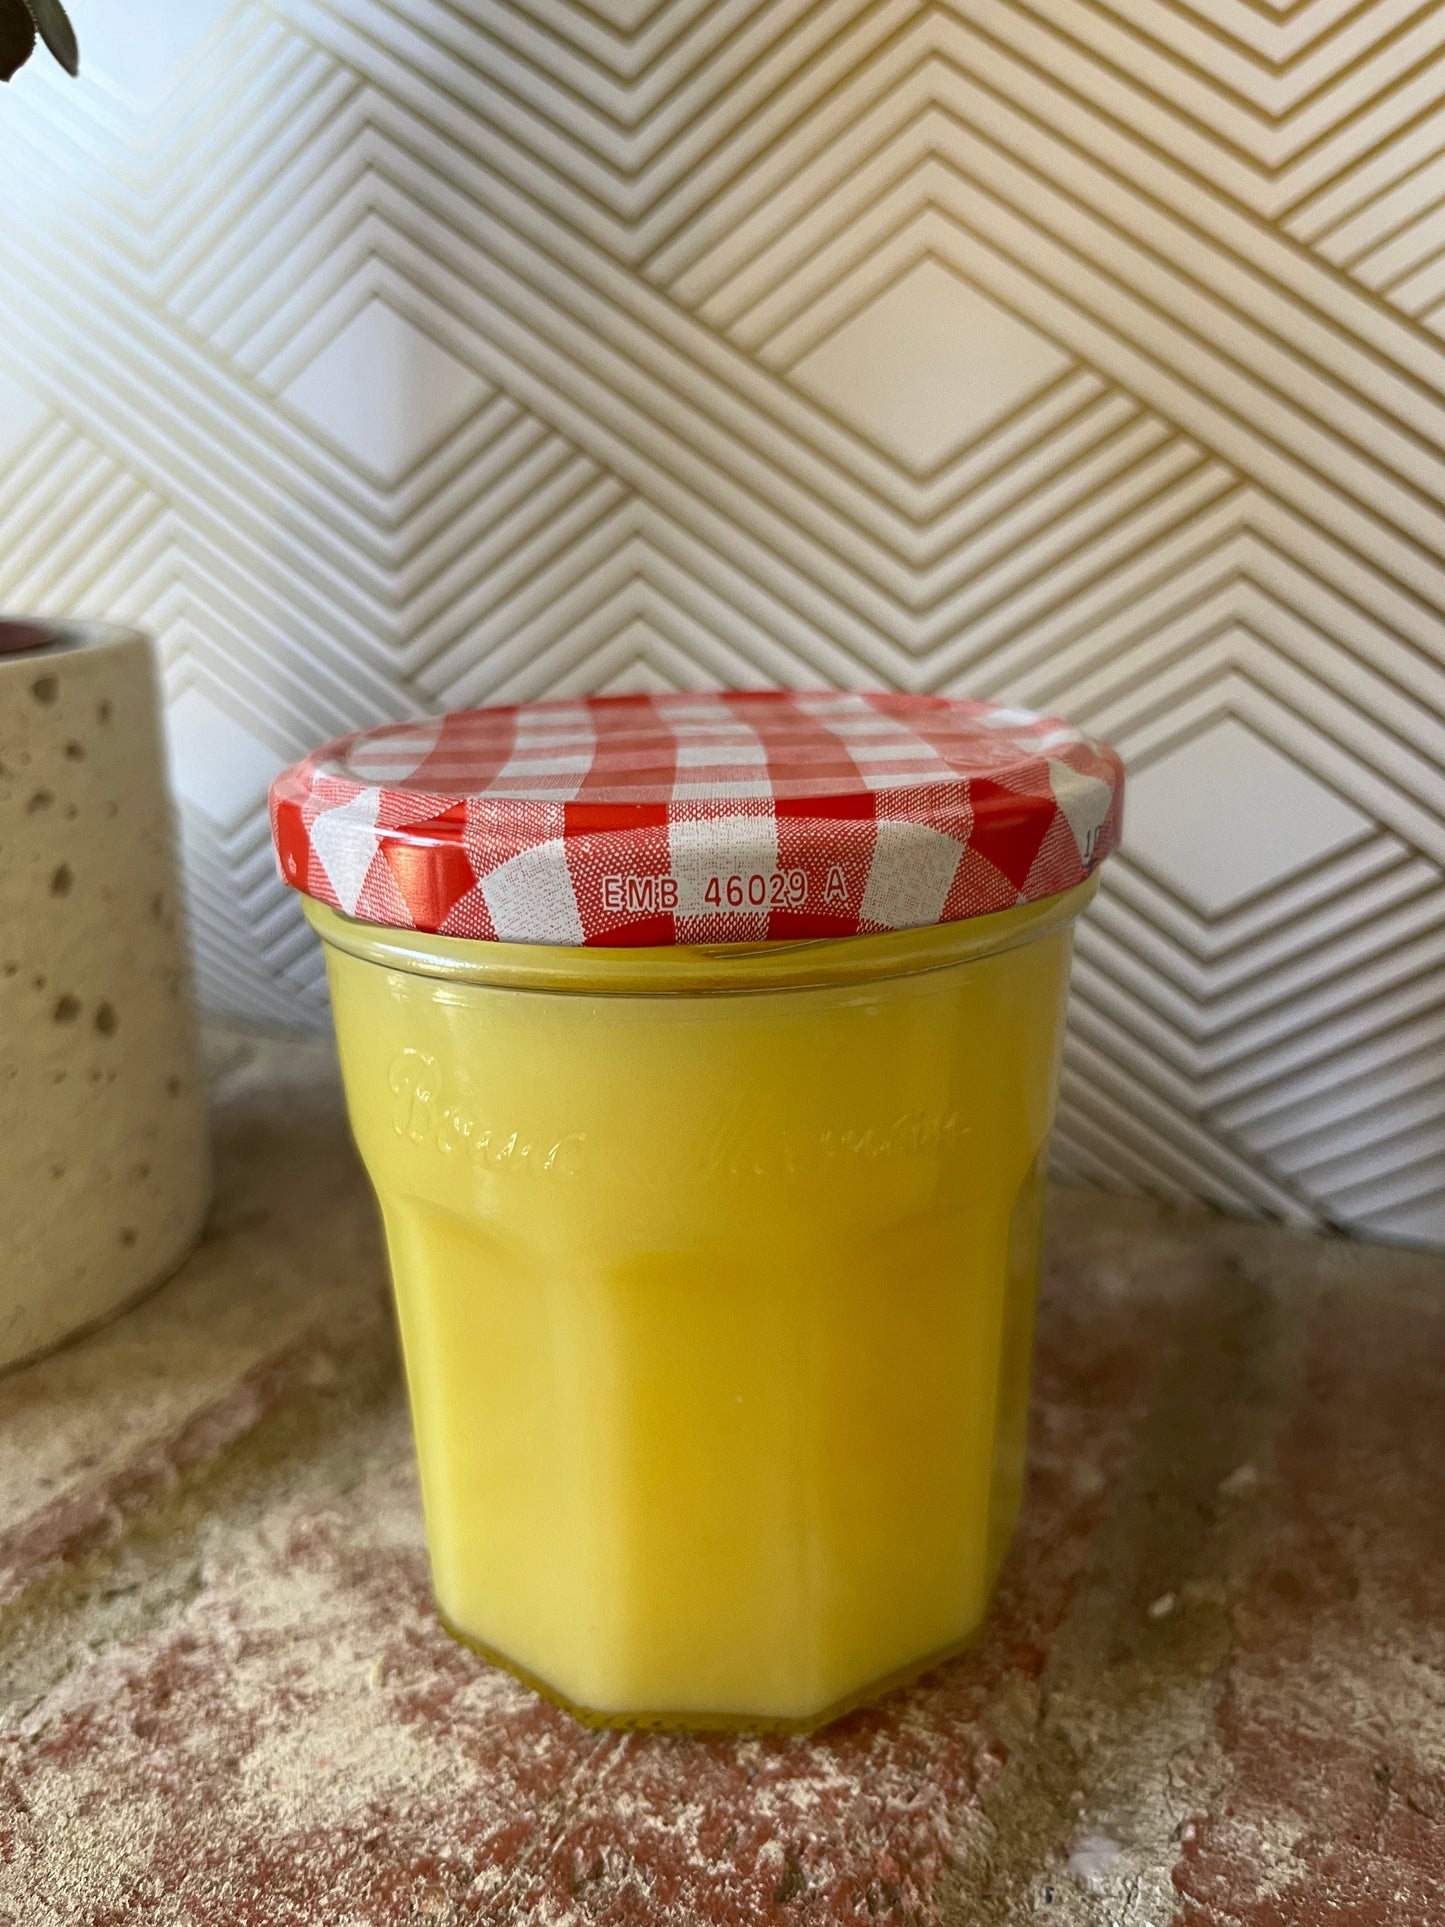 9 oz Upcycled Jam Jar Candle: Lemon Cake